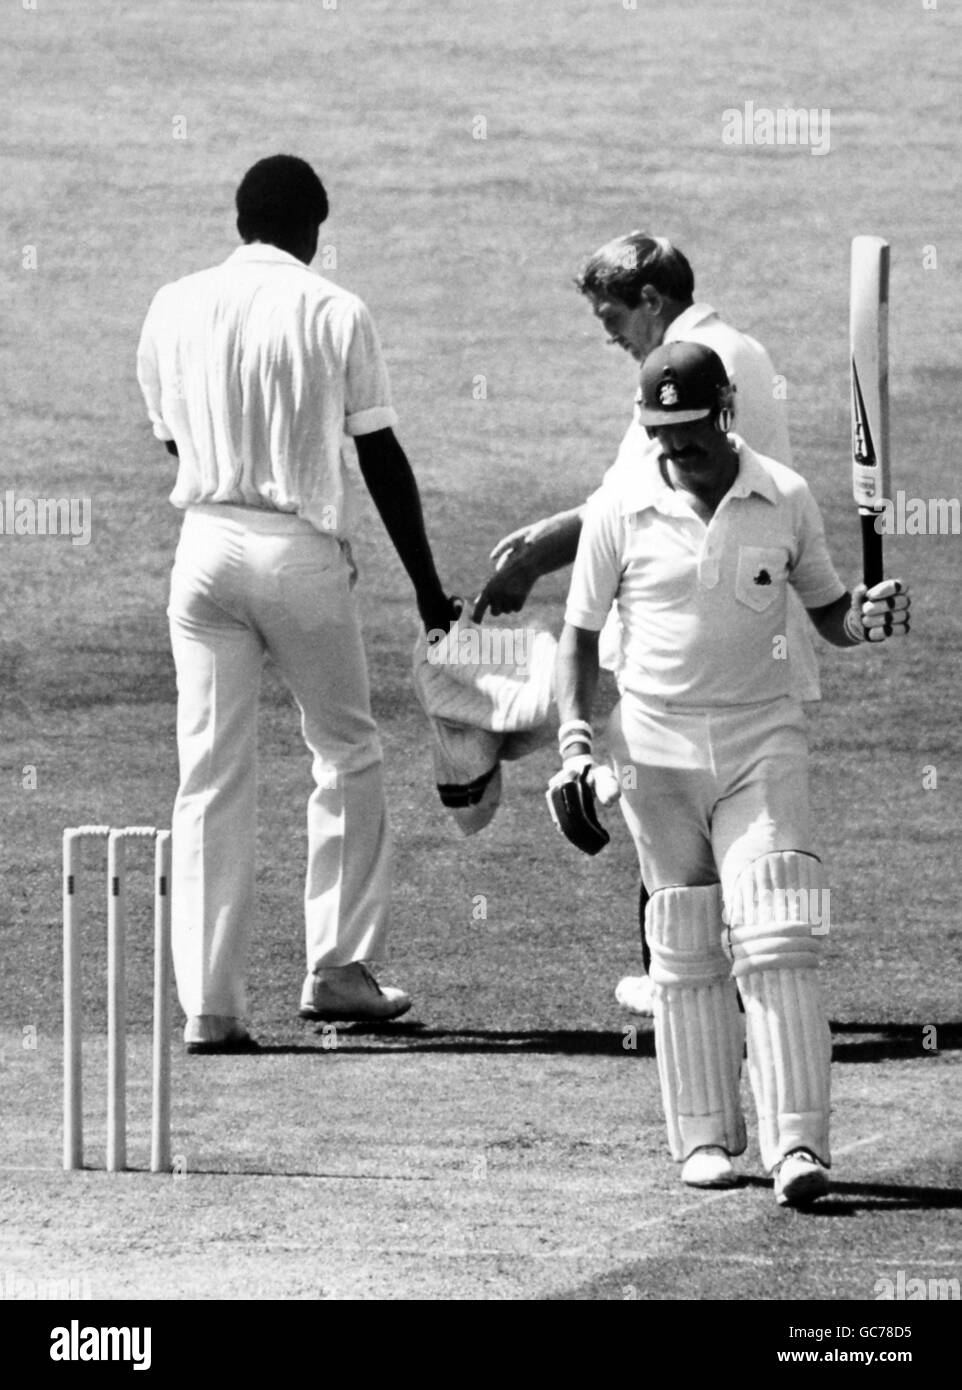 Cricket - England gegen Westindien - Westindien auf den Britischen Inseln 1980 (4. Test) - Veranstaltungsort Kennington Oval. Graham Gooch, England, hebt seine Fledermaus, um den Jubel beim Oval zu würdigen Stockfoto